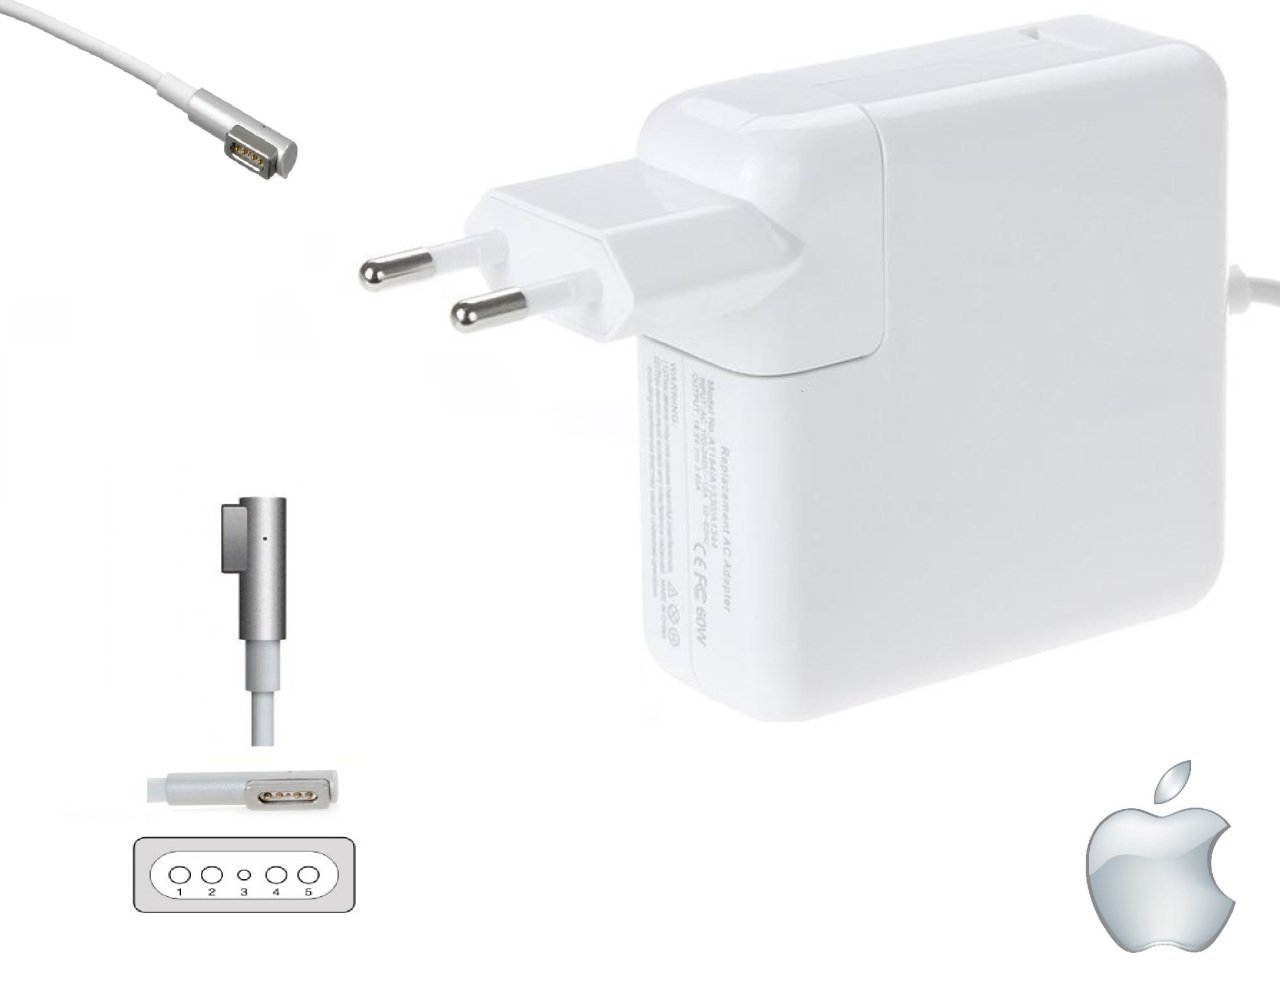 Compaxe CLAP-306 Apple Macbook Pro Şarj Aleti 85W MagSafe...Yüksek Verimli 18.5V 4.6A 85W Old L Type Konnektörlü Kolay Taşınabilir Tasarım Apple Şarj Adaptörü